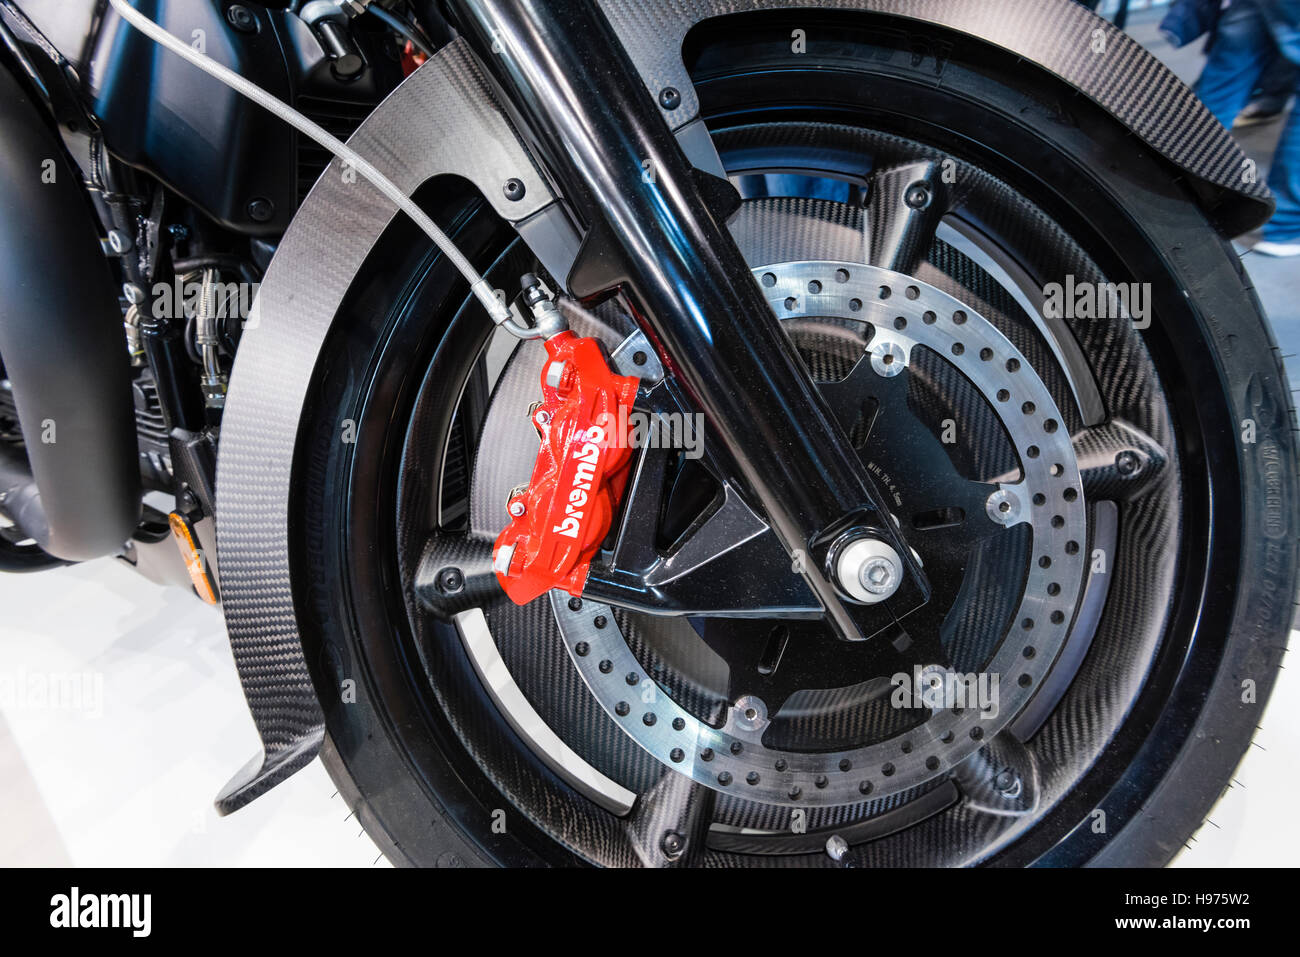 Zurich, Suisse - 21 Feb 2016 : roue avant et d'un système de freinage Brembo  Moto Guzzi moto MGX-21 exposé au Moto suisse Zurich, Suisse moto le plus  grand juste Photo Stock - Alamy